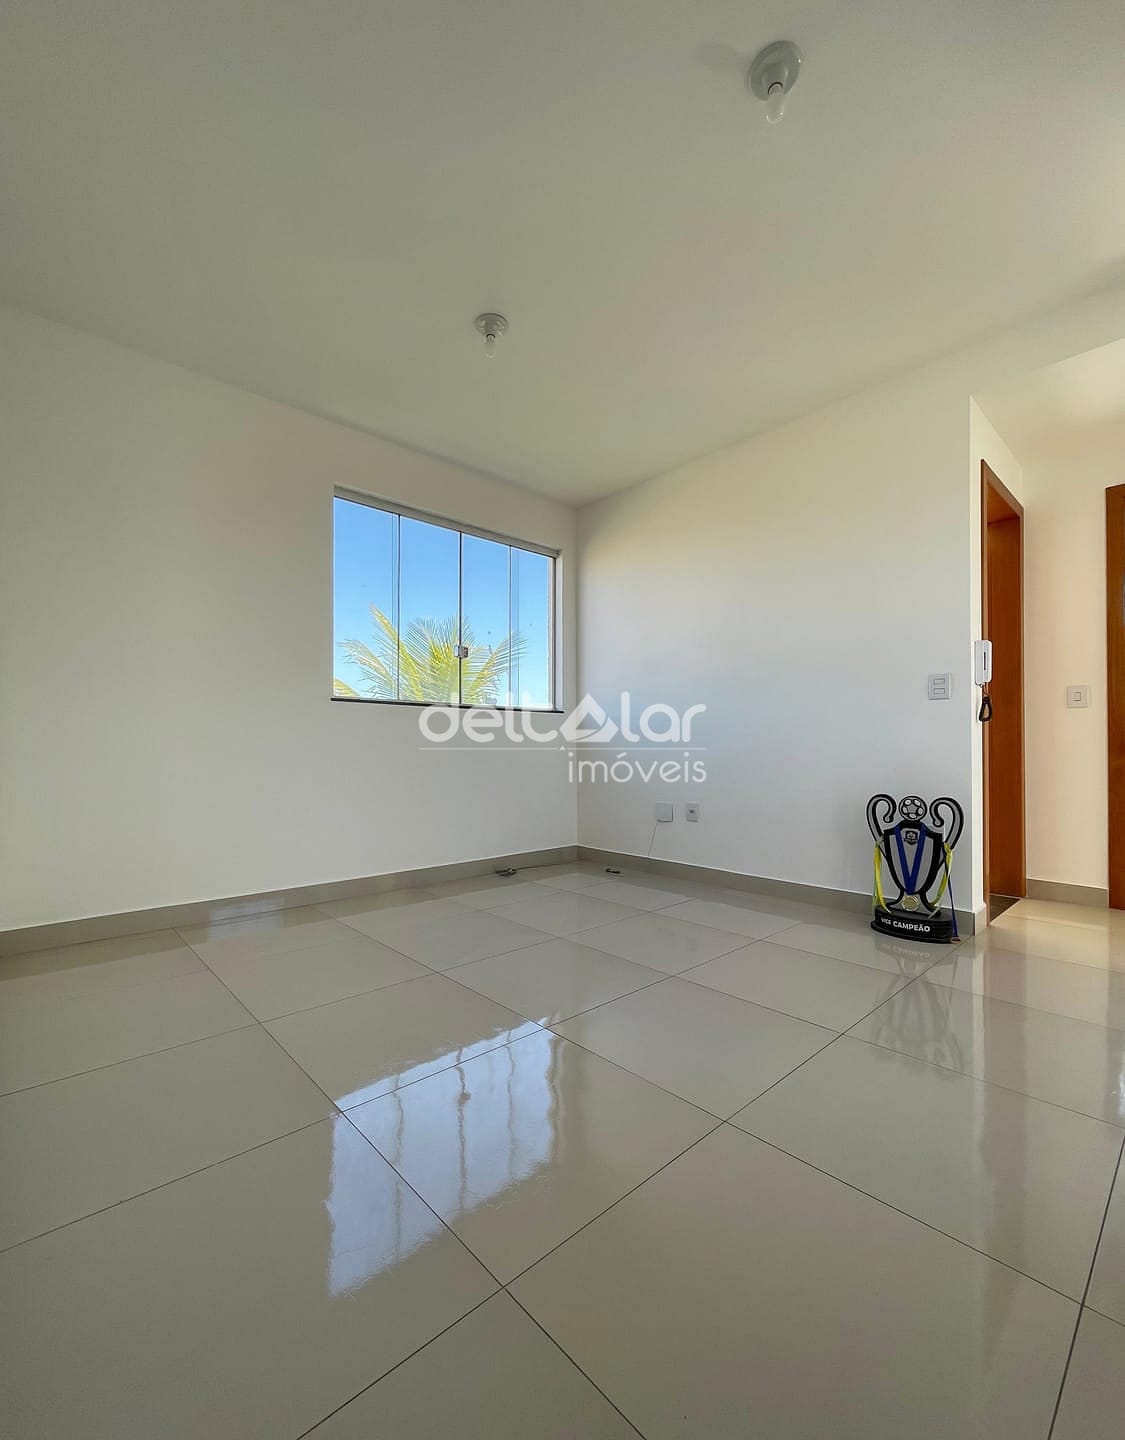 Apartamento em Maria Helena, Belo Horizonte/MG de 54m² 2 quartos à venda por R$ 209.000,00